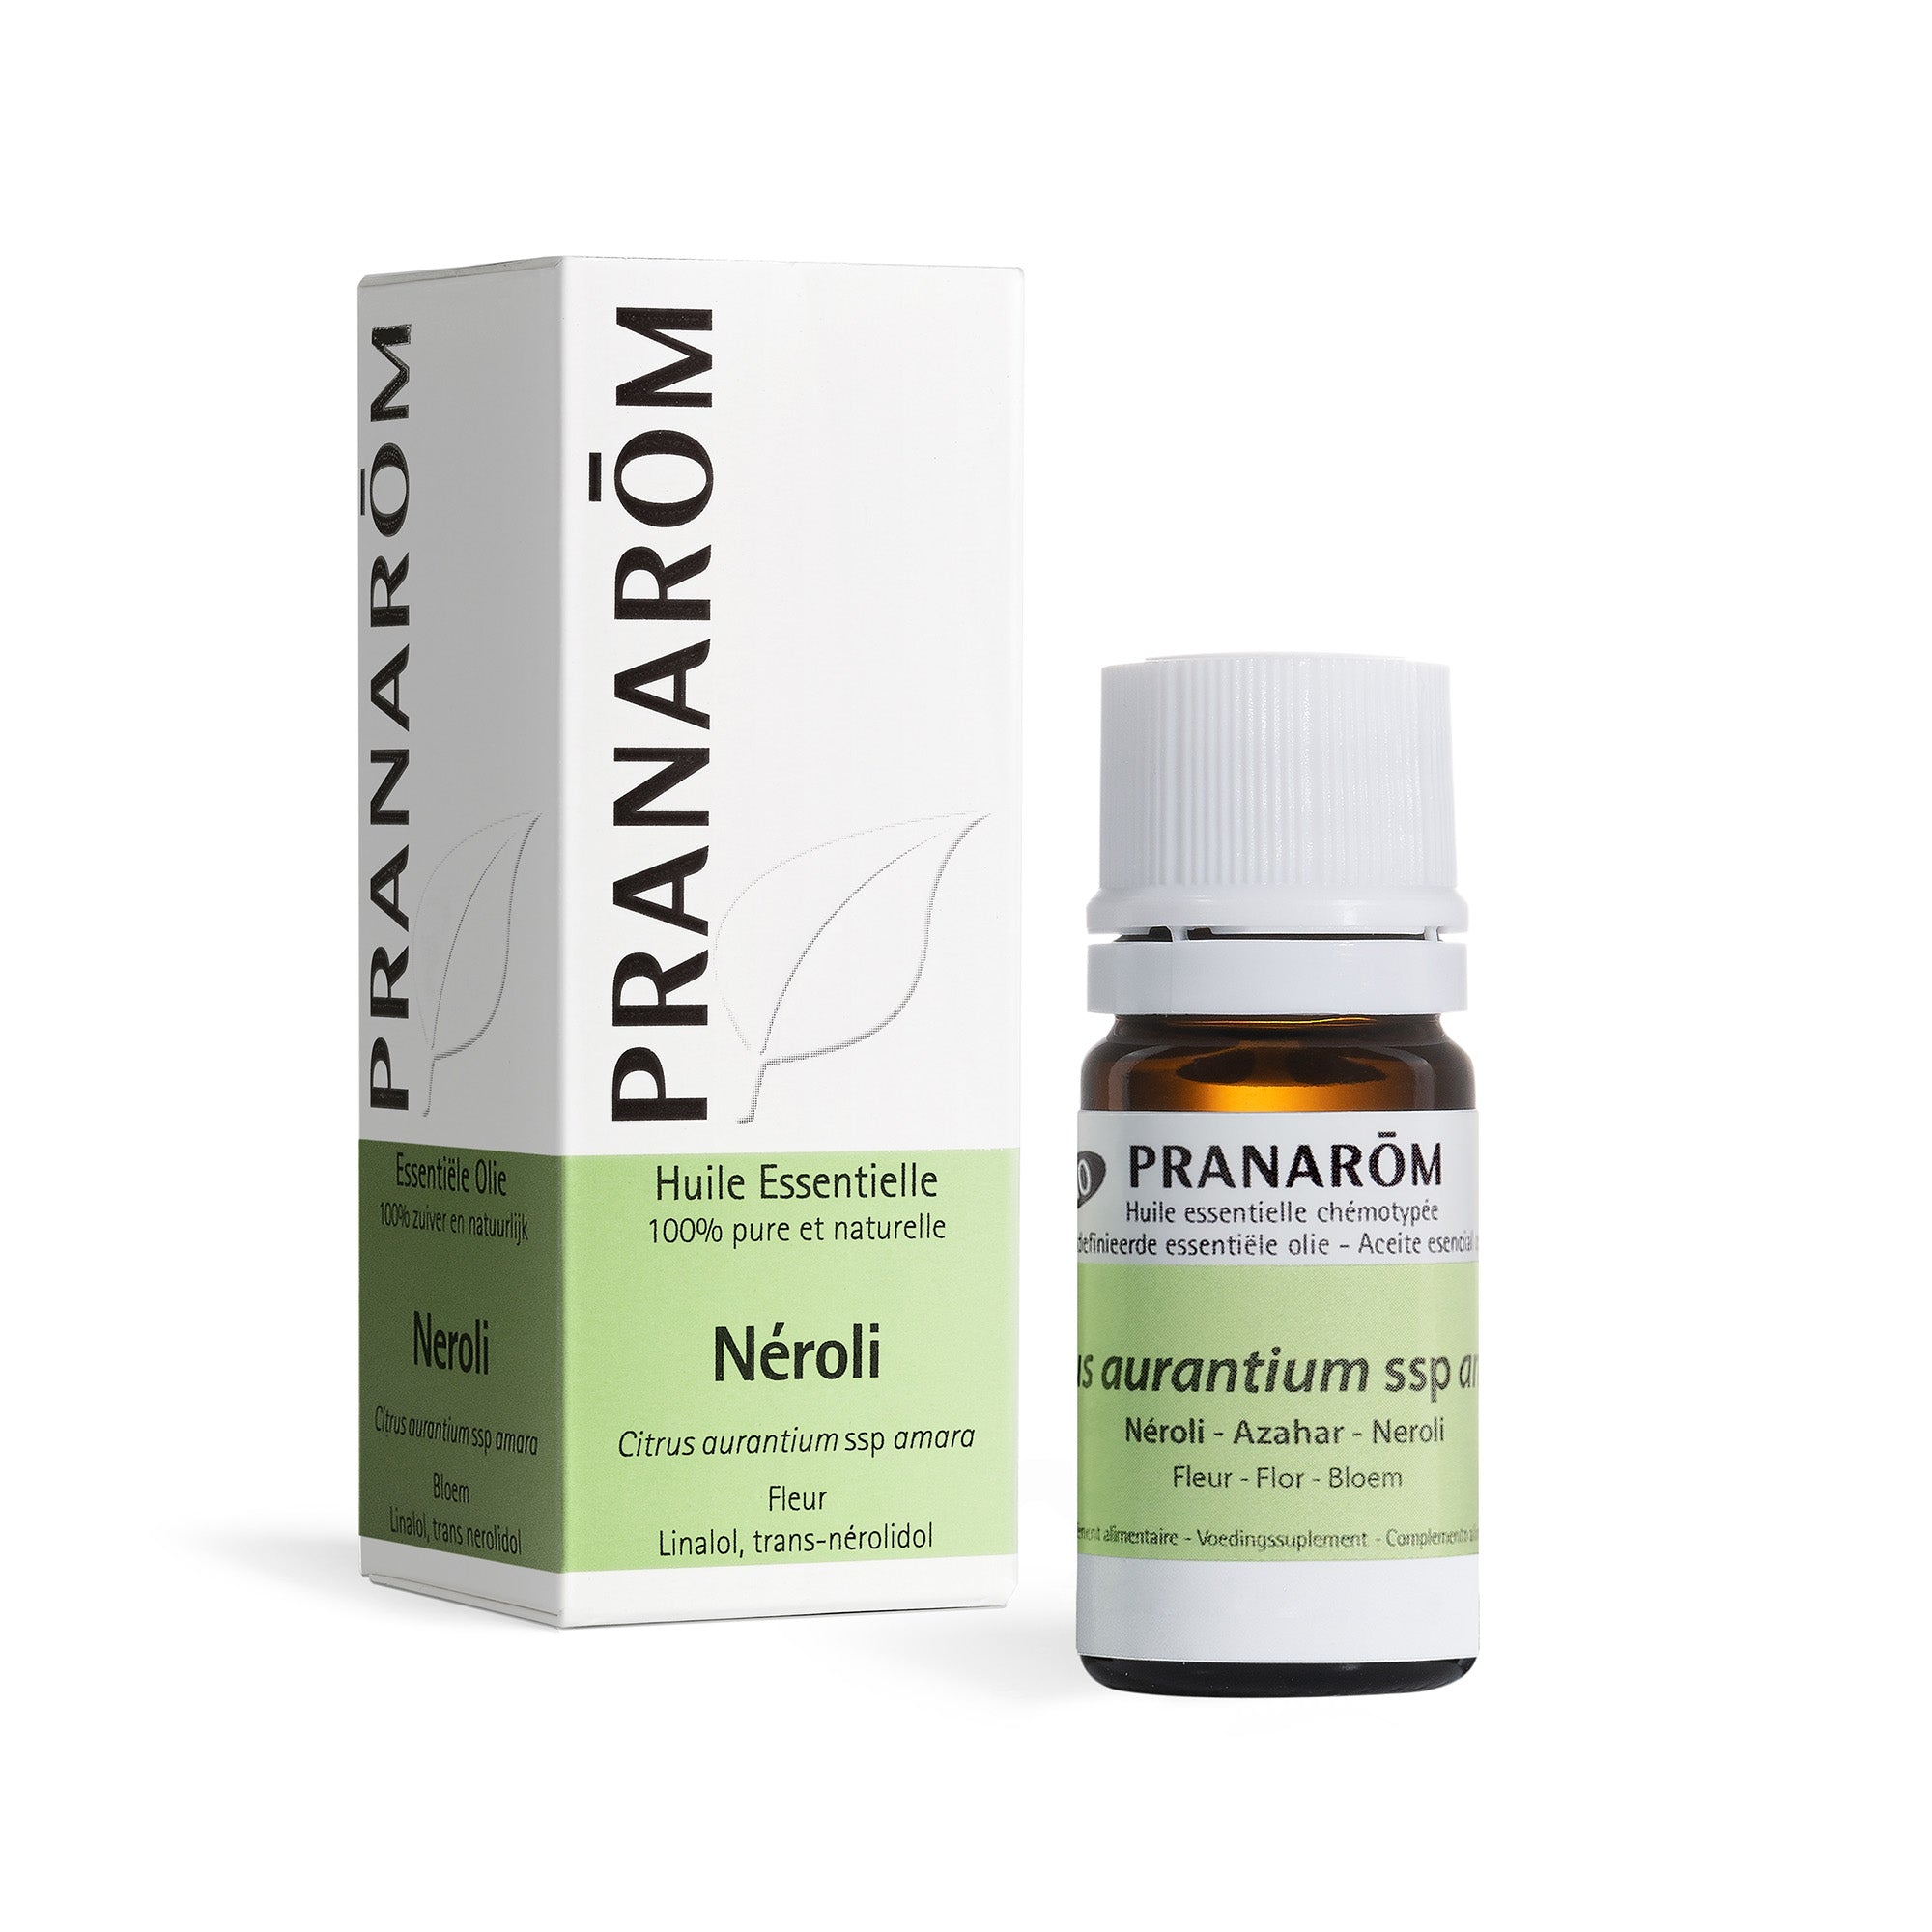 Pranarom - Huile Essentielle Néroli 2 ml